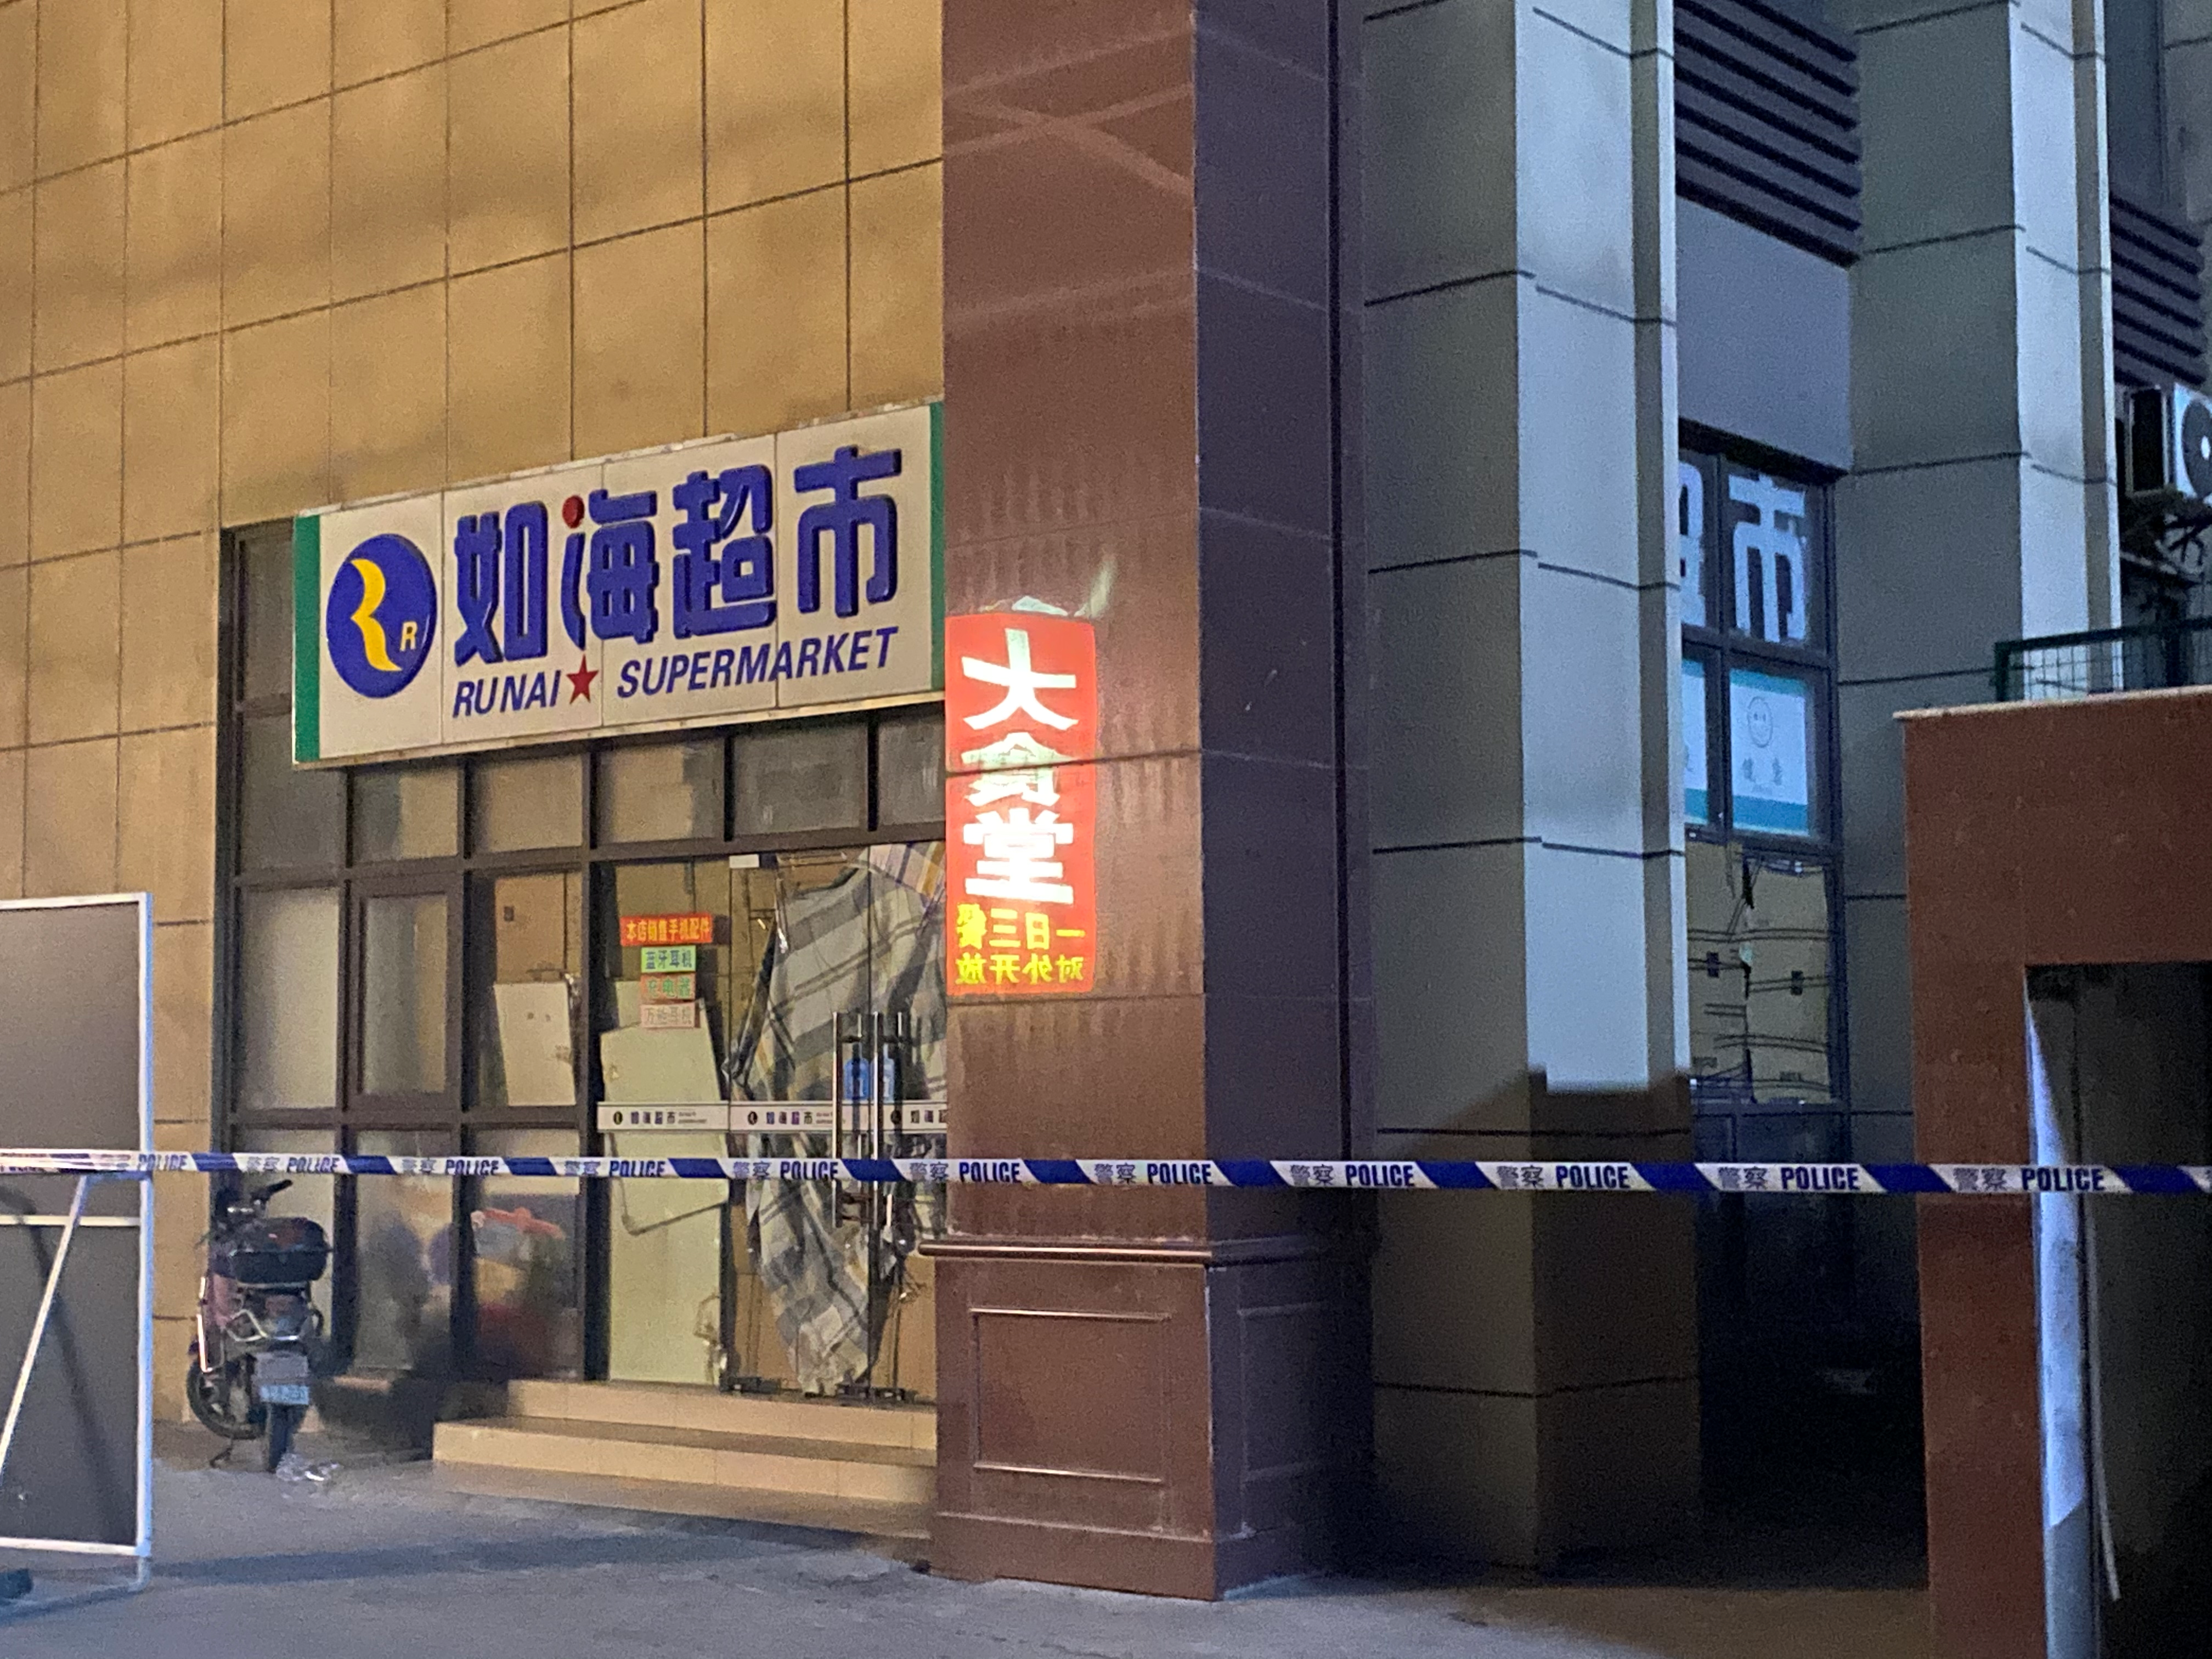 上海27岁男子当街杀人后劫持人质被击毙！记者实地探访事发超市已关停，现场设有警戒设备